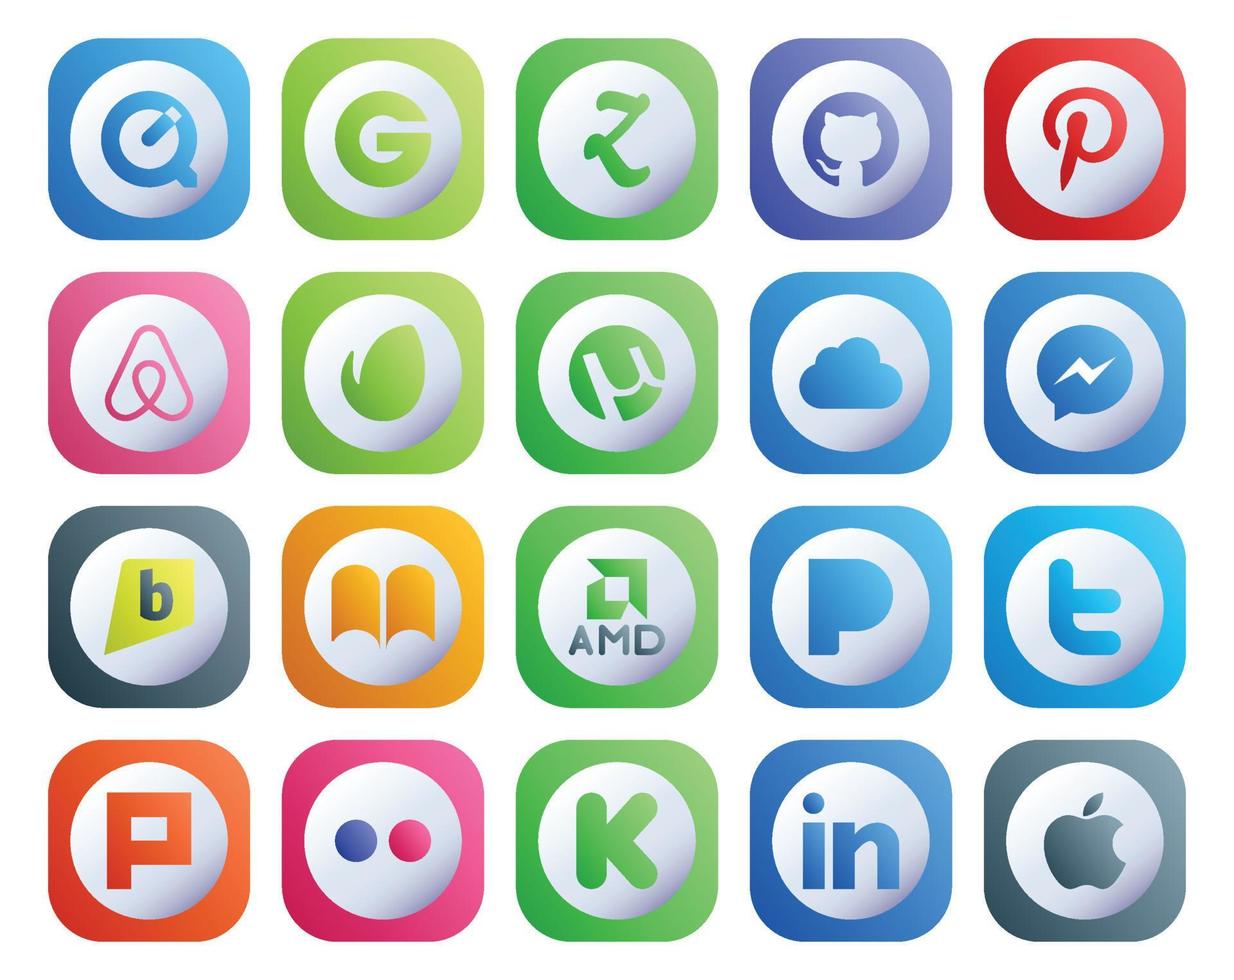 20 social media ikon packa Inklusive flickr PIP icloud Twitter amd vektor